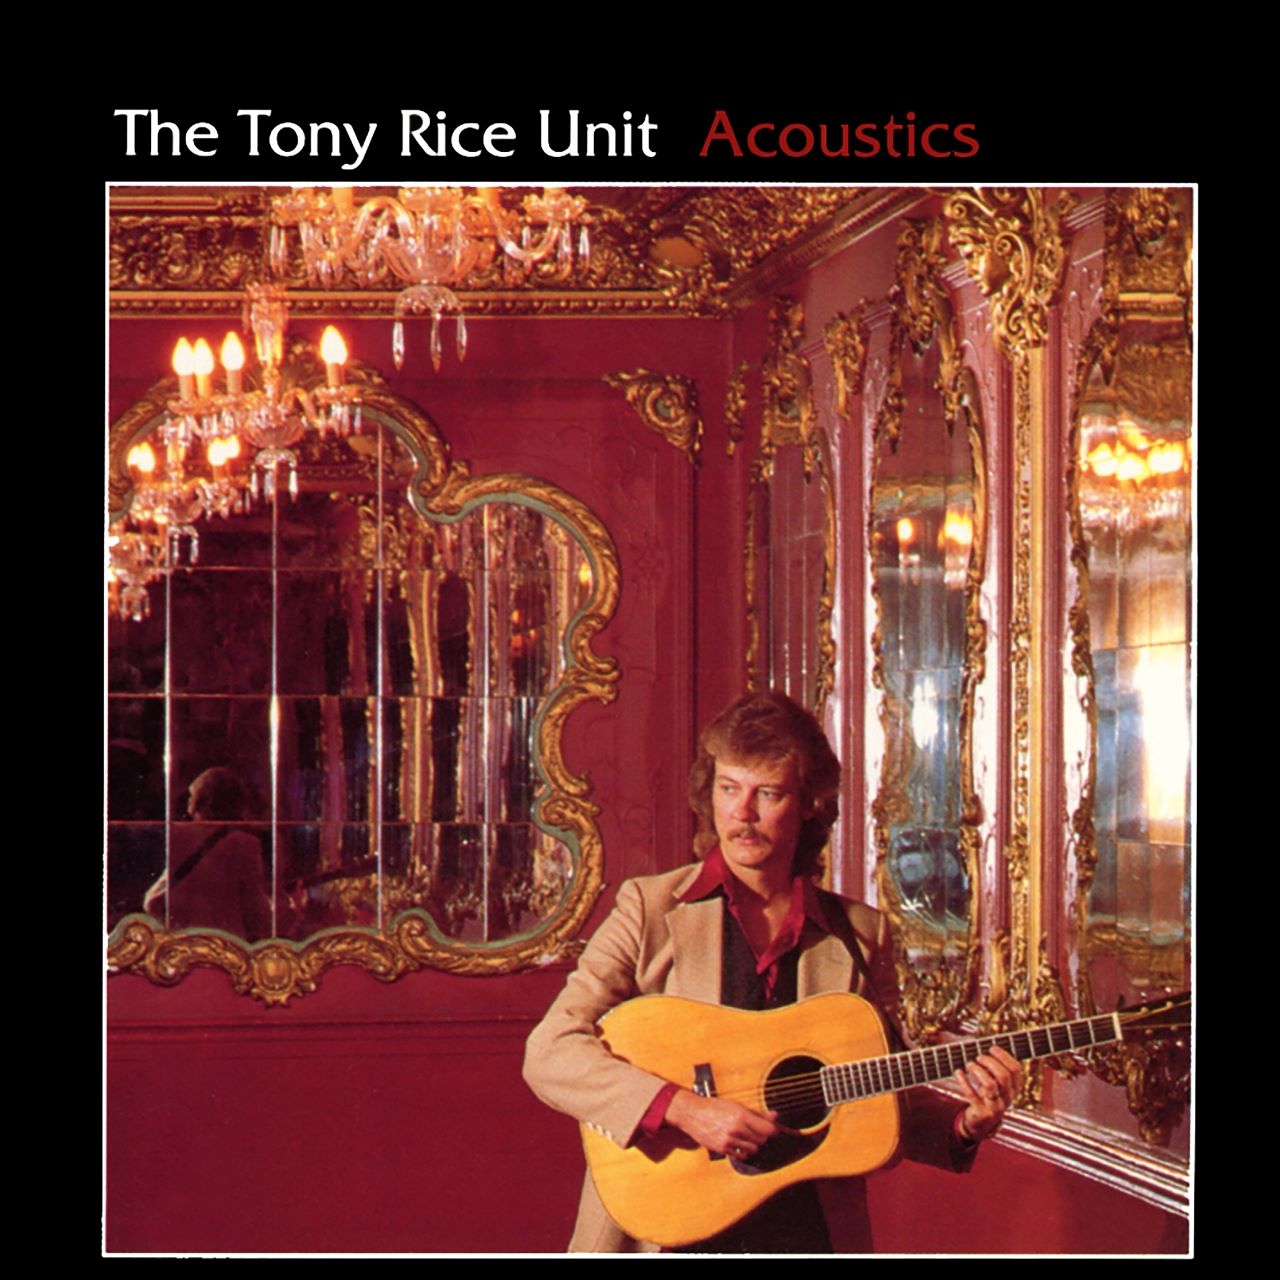 Tony Rice Unit – Acoustics cover album